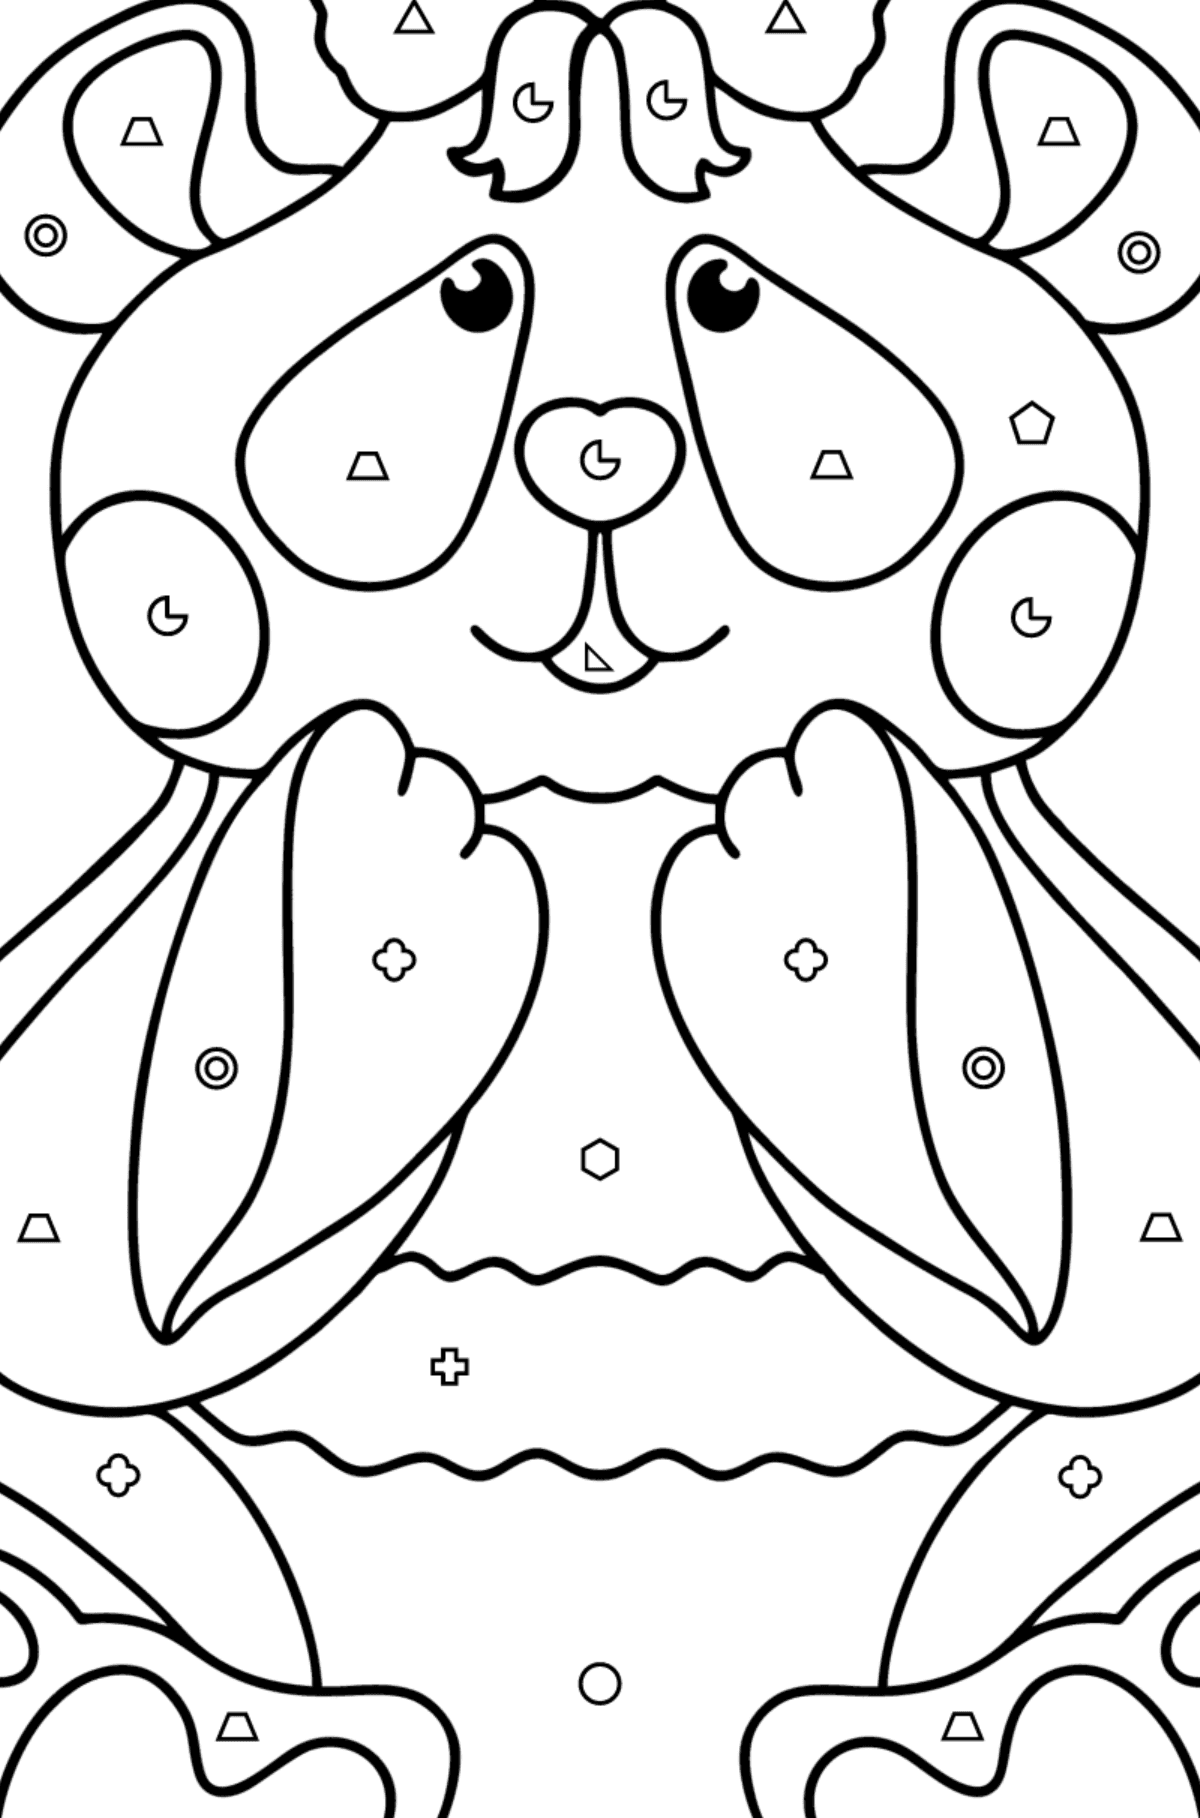 Kolorowanka panda kochanie - Kolorowanie według figur geometrycznych dla dzieci